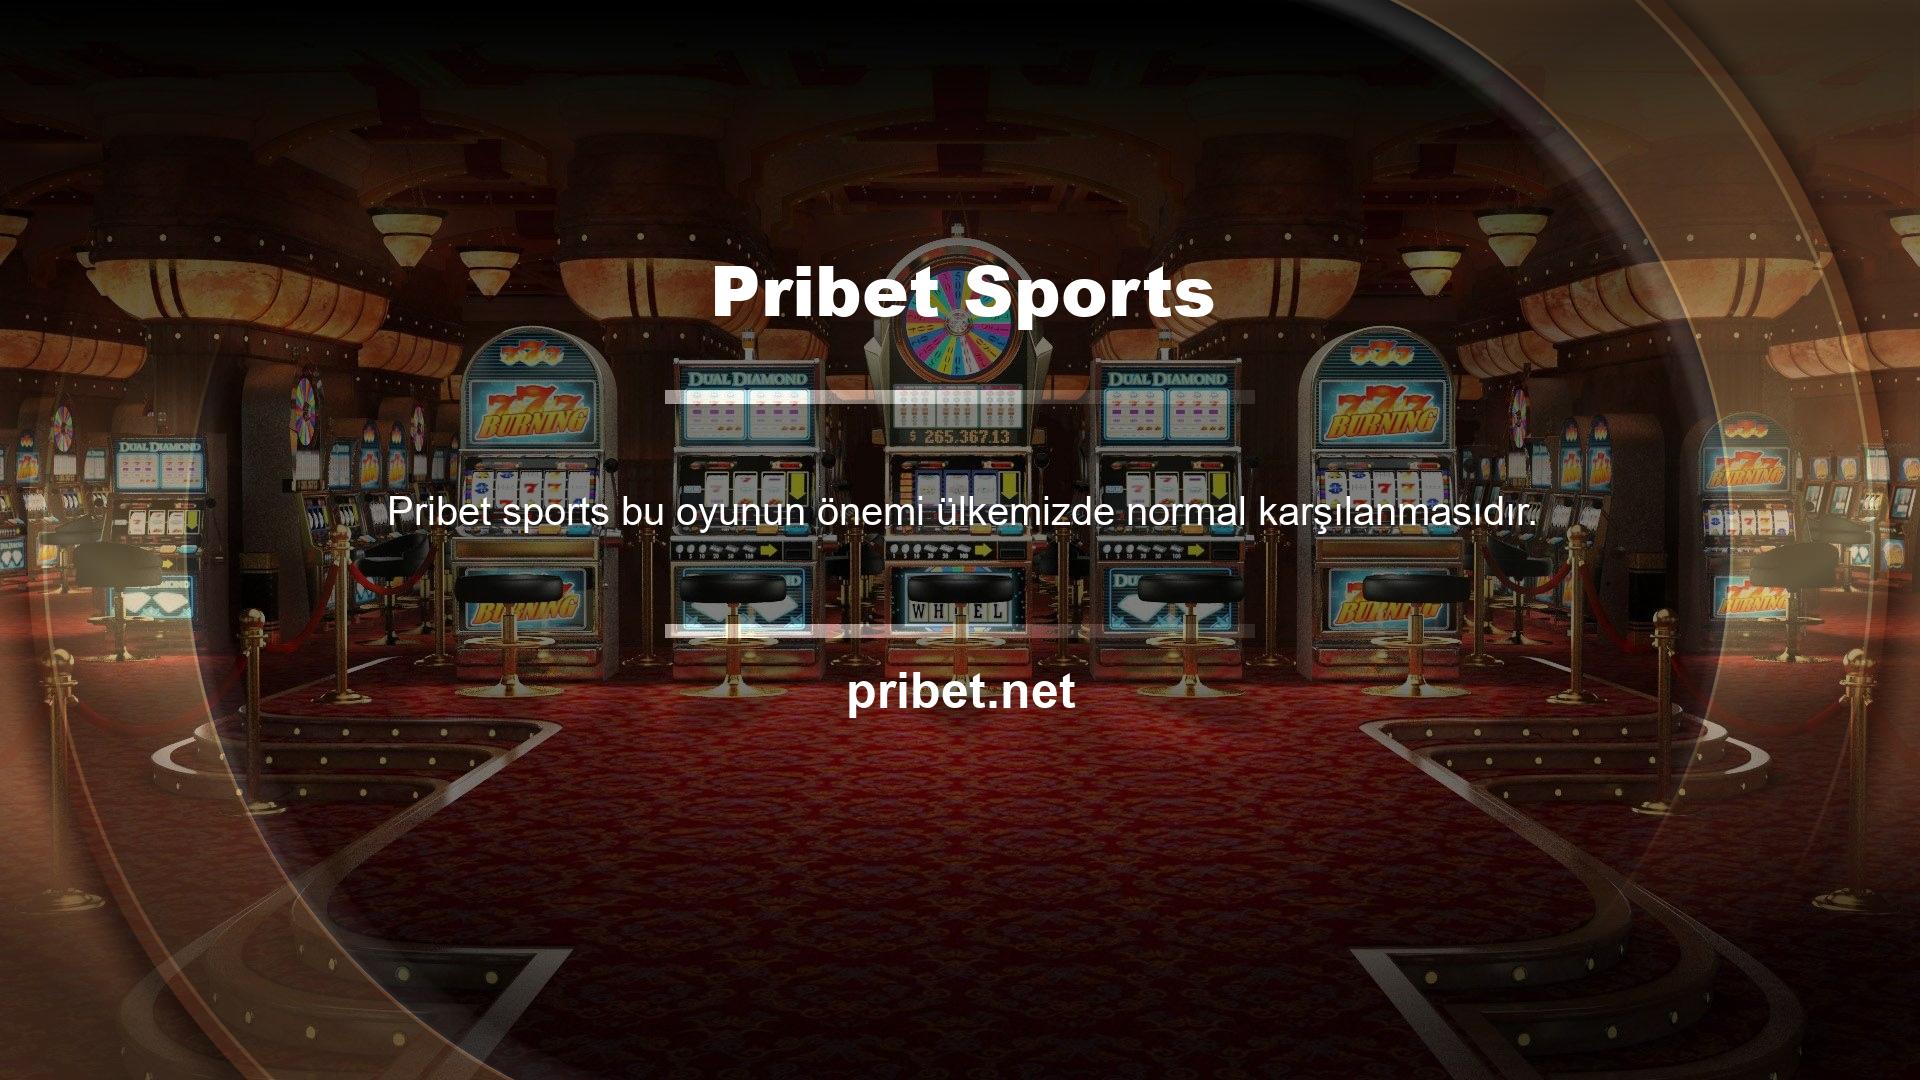 Bireyler bu casino oyunlarını daha az parayla daha tatmin edici bir duruma ulaşmak için ayarlayabilirler